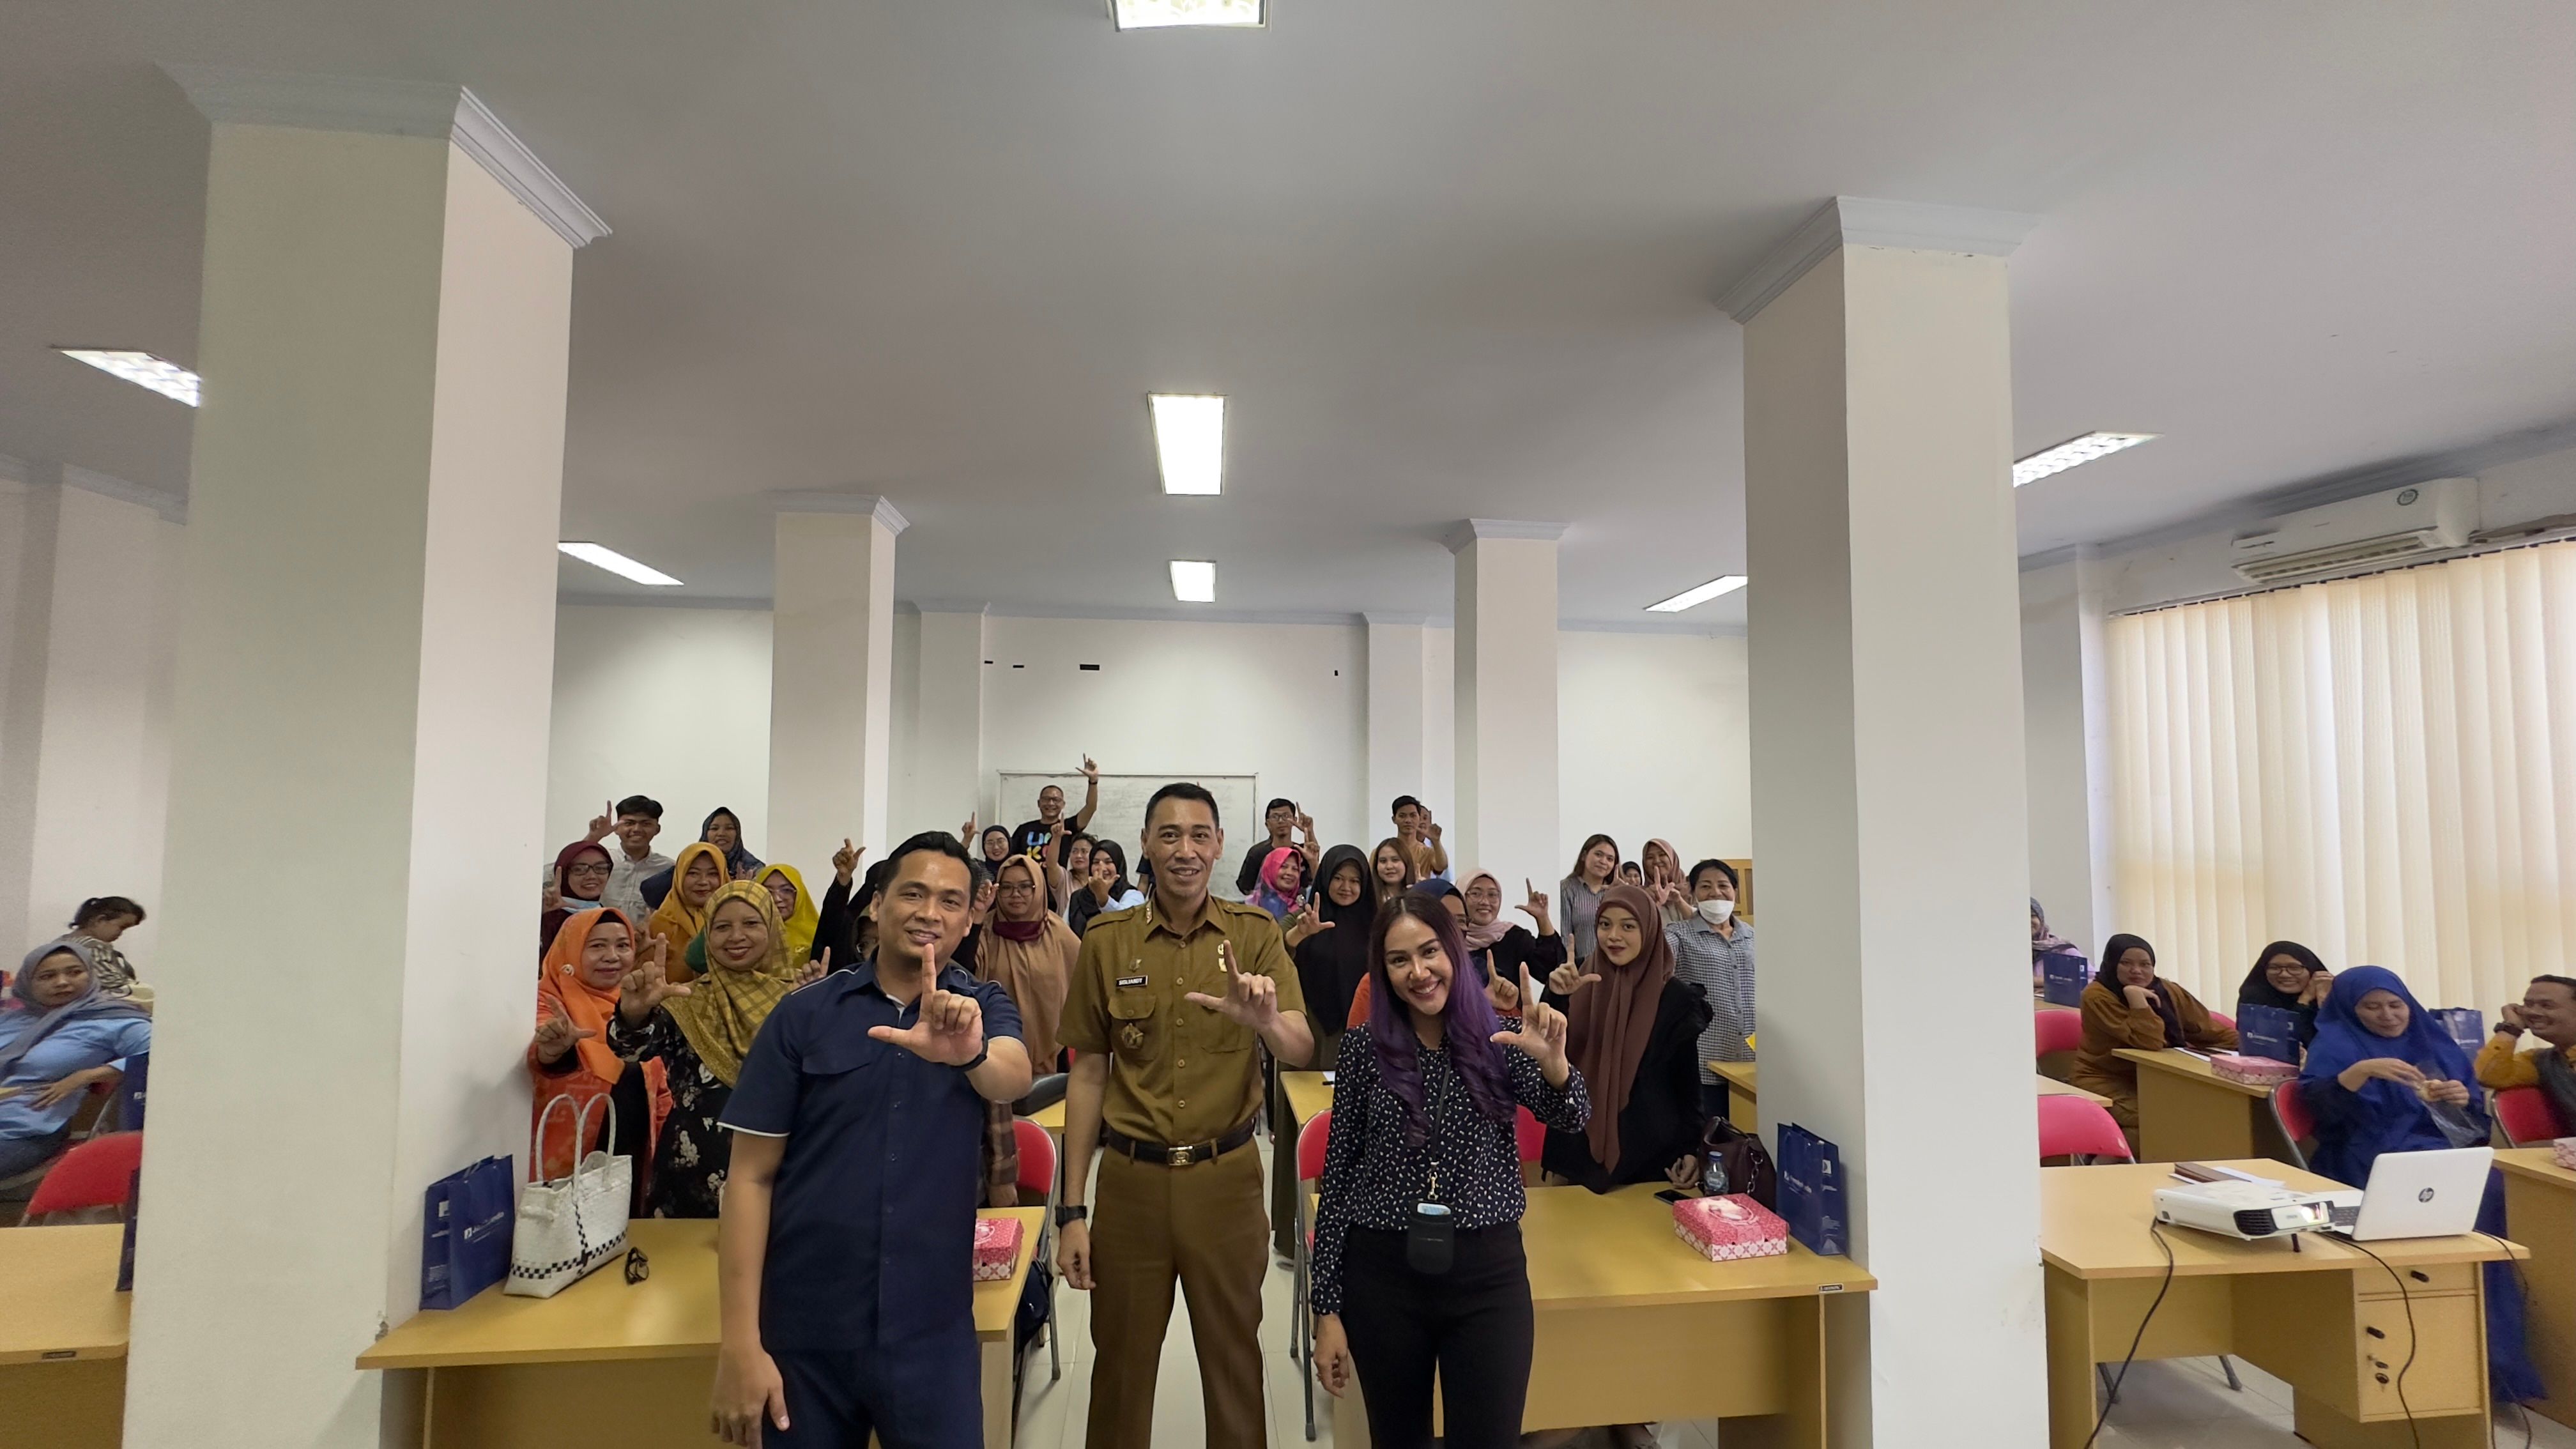 Gelar Workshop di Palu, Jamkrindo Dorong Literasi Keuangan UMKM di Wilayah Indonesia Timur